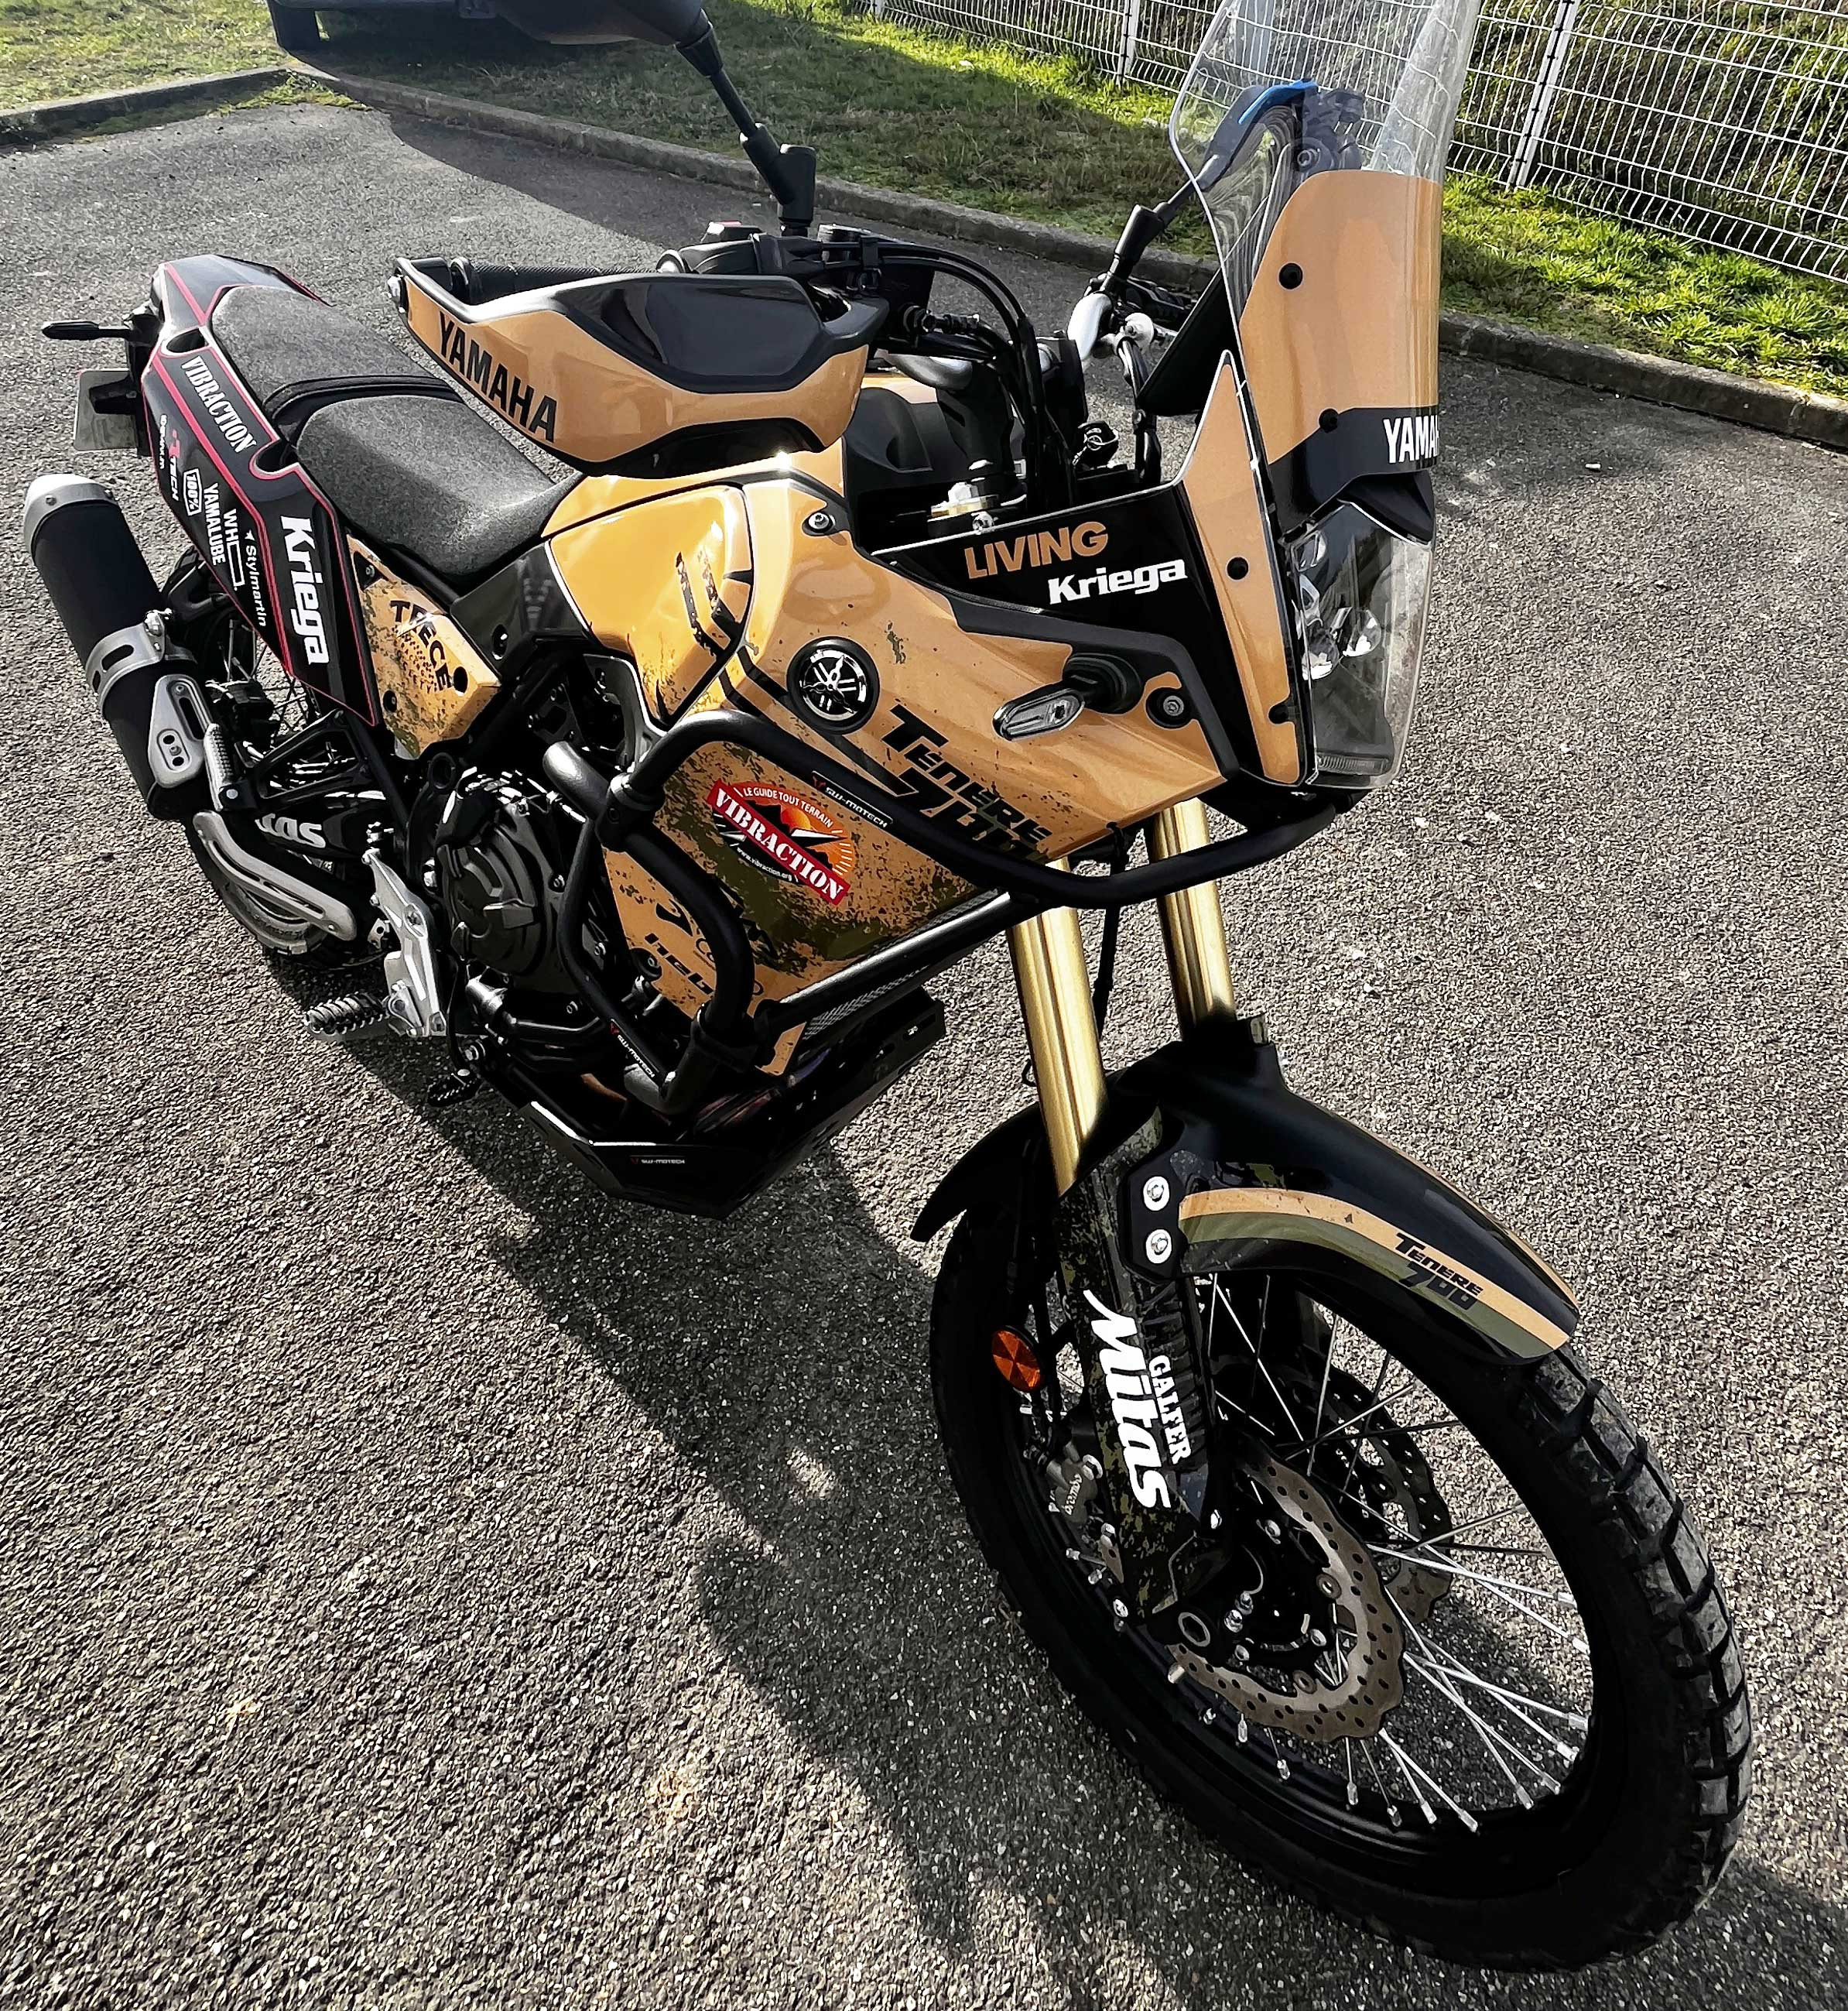 Nuevo kit de decoración y adhesivos para la moto Yamaha 700 ténéré.